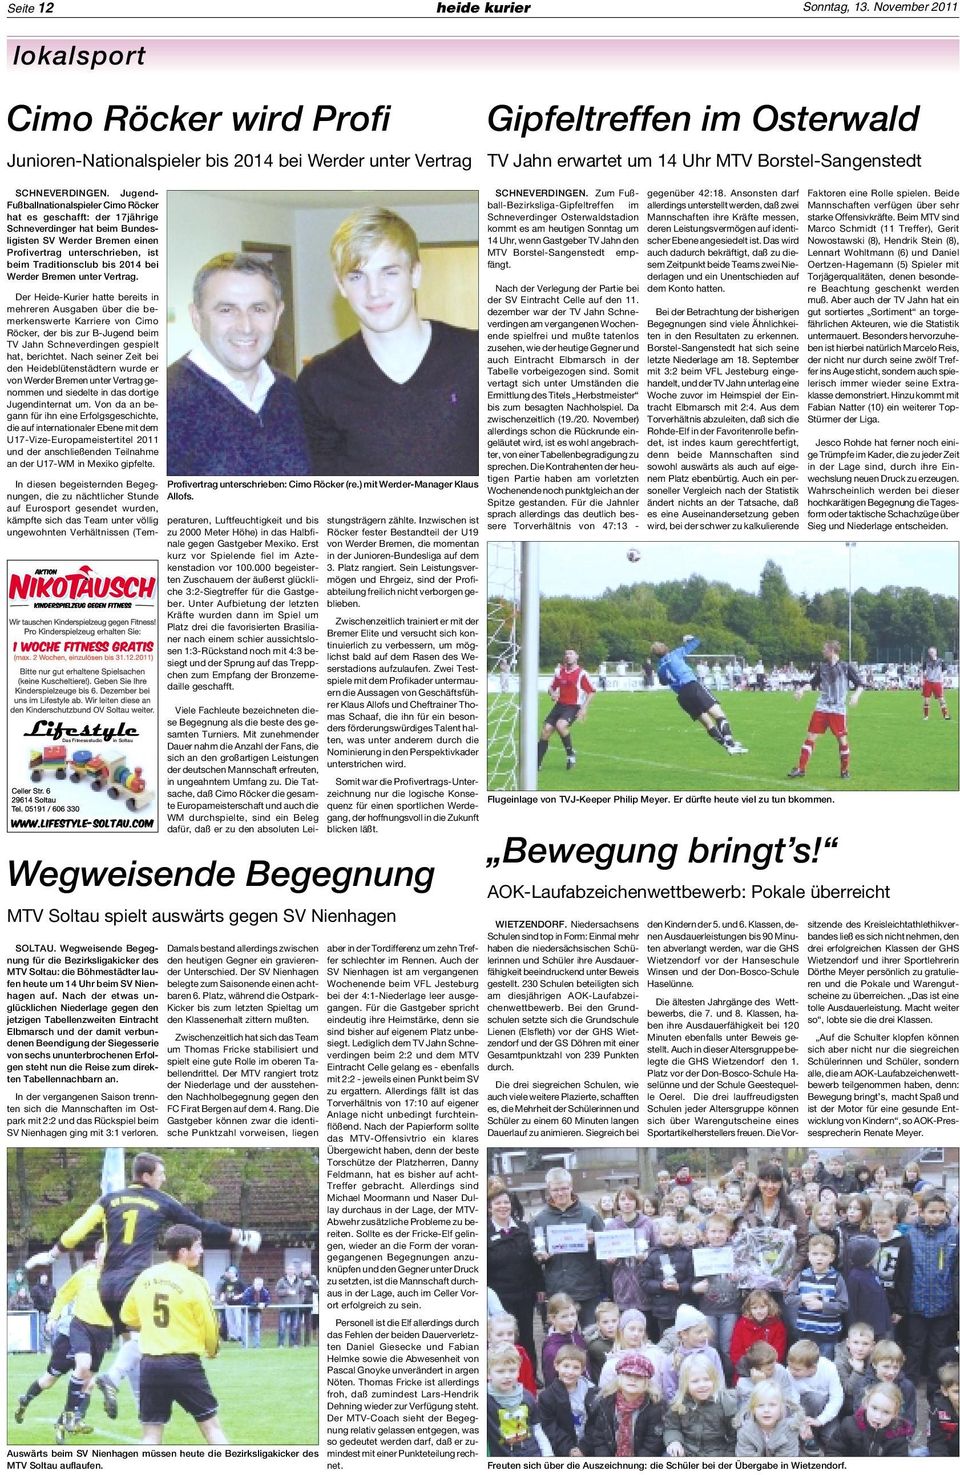 Jugend- Fußballnationalspieler Cimo Röcker hat es geschafft: der 17jährige Schneverdinger hat beim Bundesligisten SV Werder Bremen einen Profivertrag unterschrieben, ist beim Traditionsclub bis 2014